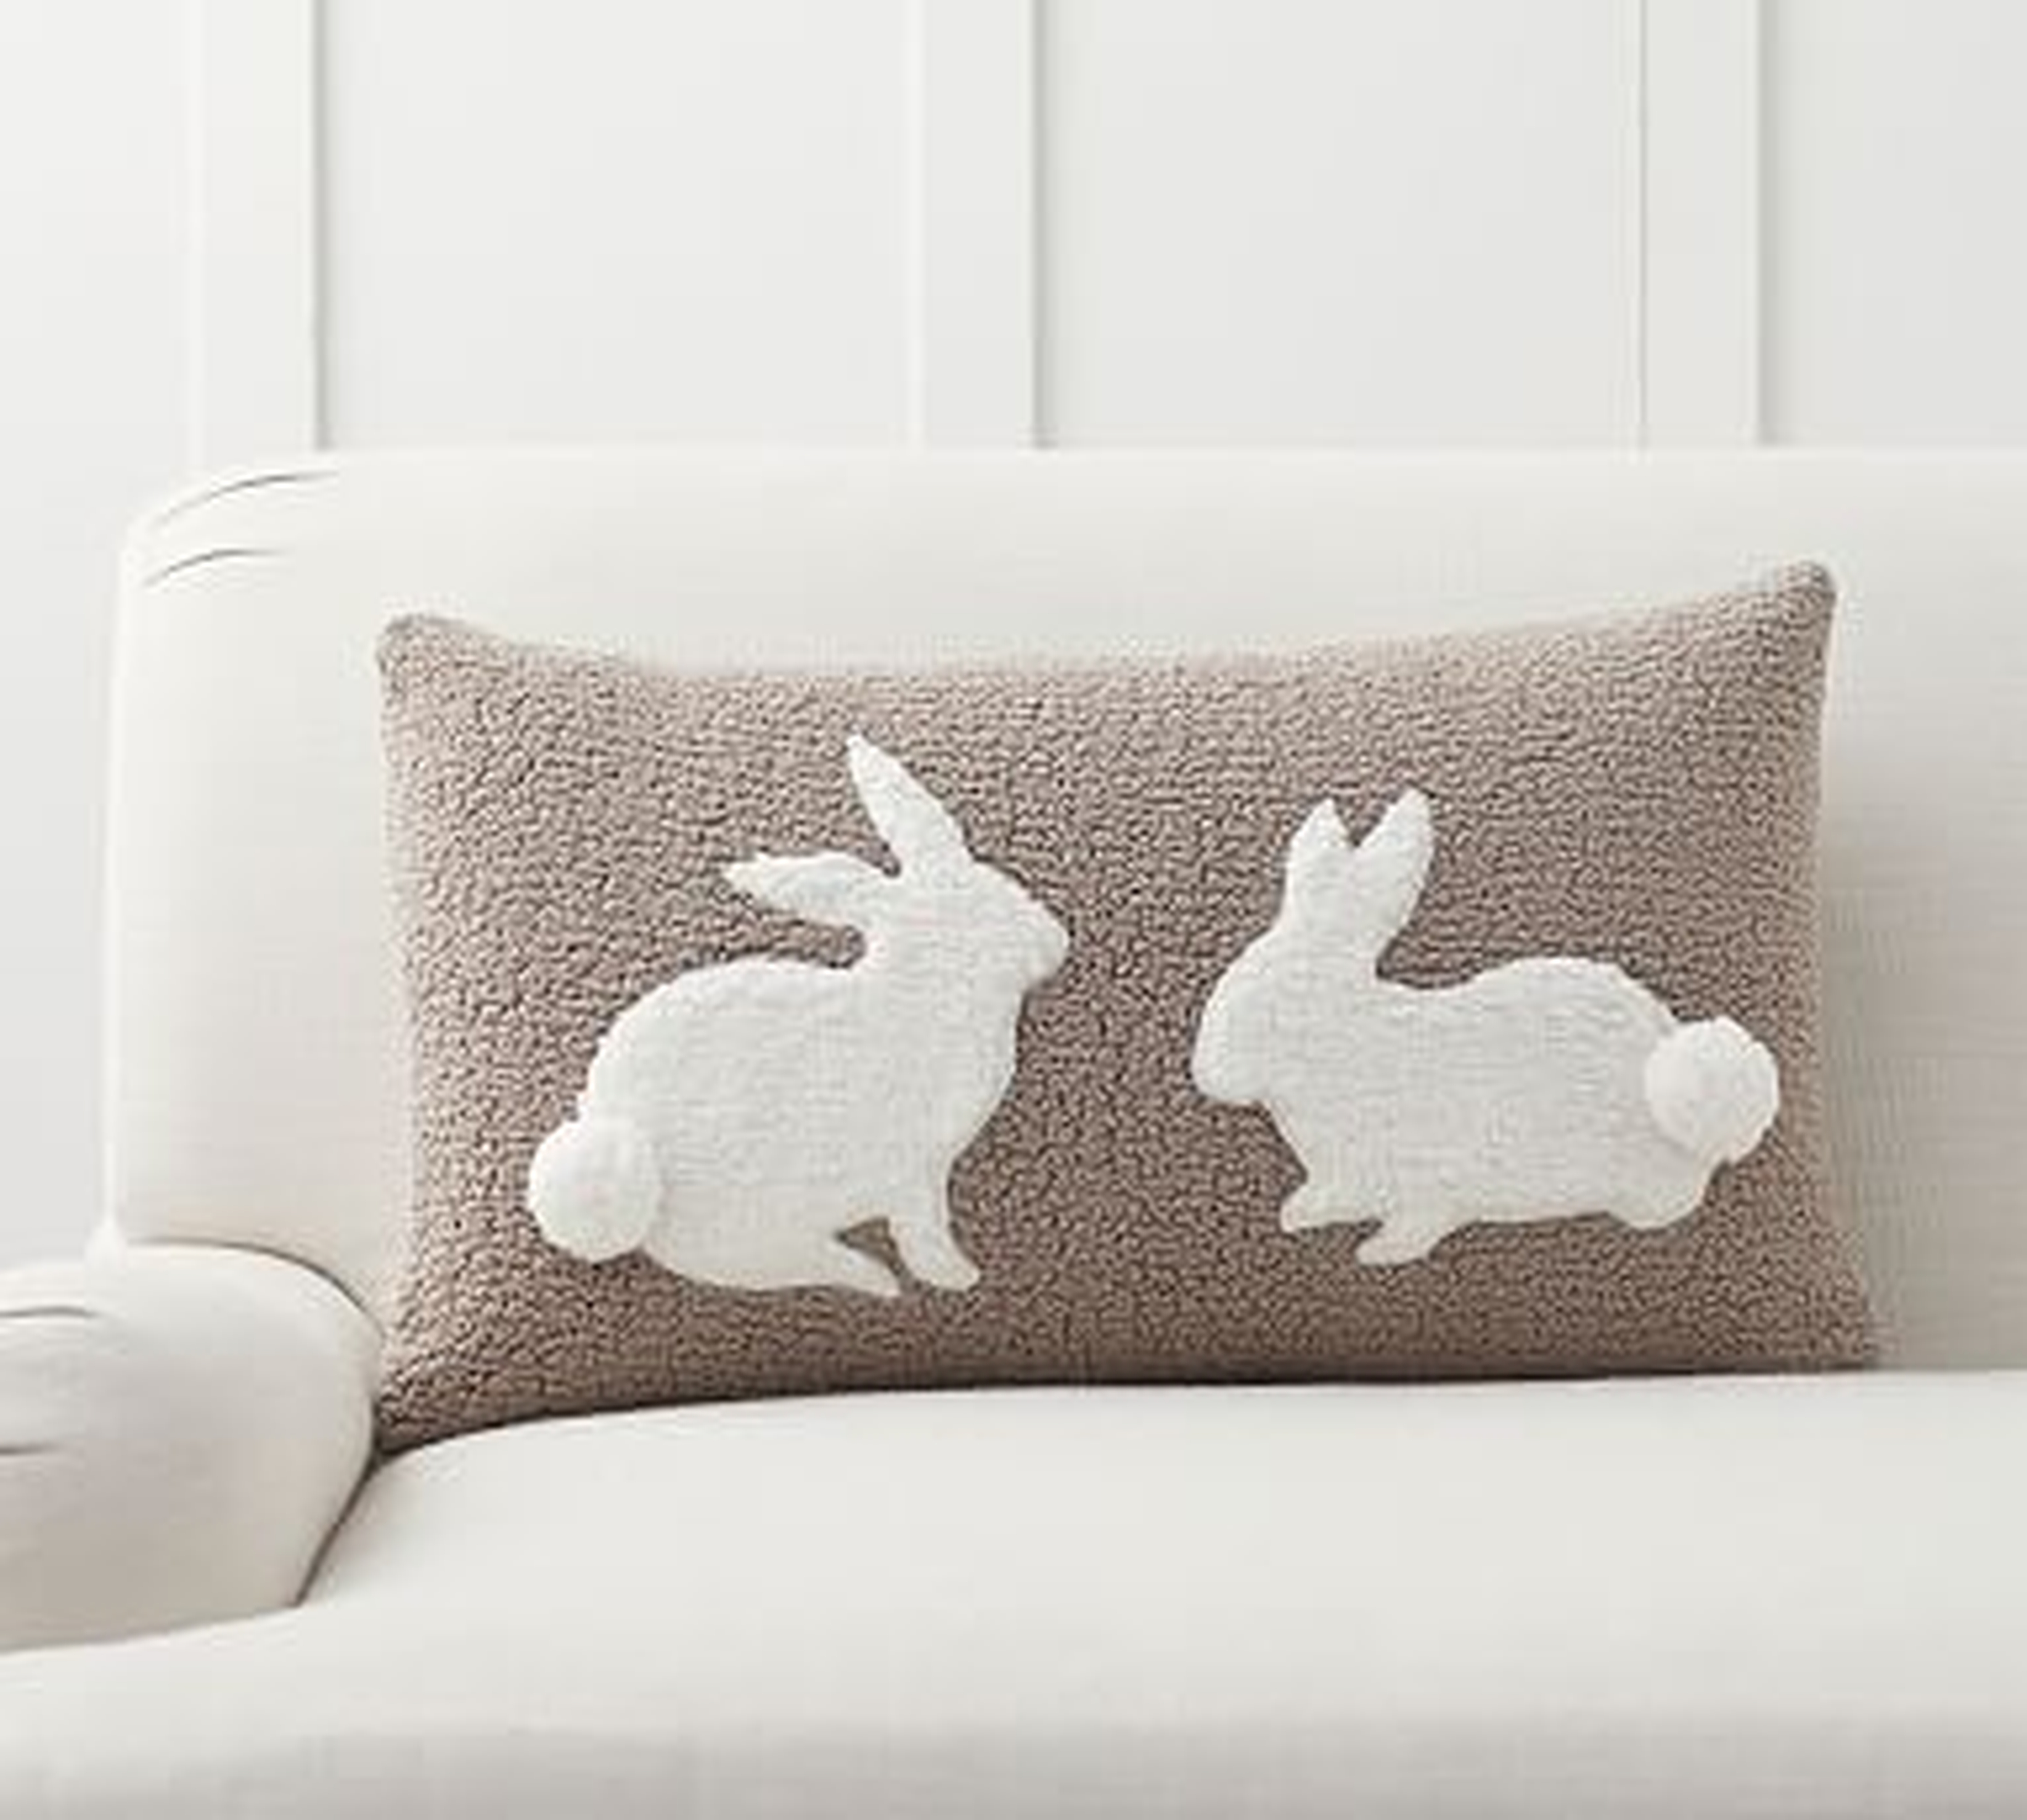 Pom Pom Bunny Pillow Cover, 16 x 26", Neutral Multi - Pottery Barn